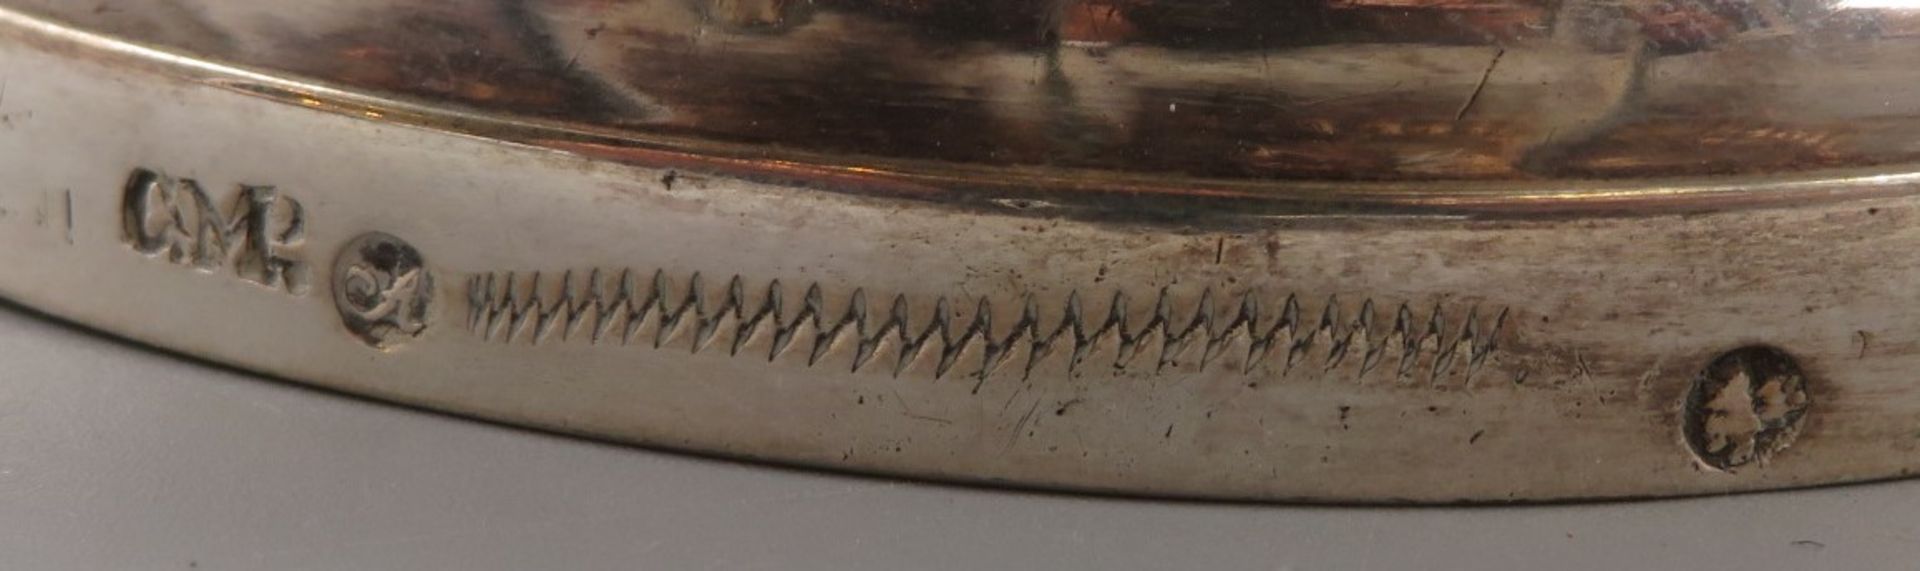 Antike Teekanne, 1. Hälfte 19. Jahrhundert, Silber 800/000, antike Punzen und Tremolierstrich, Holz - Image 2 of 2